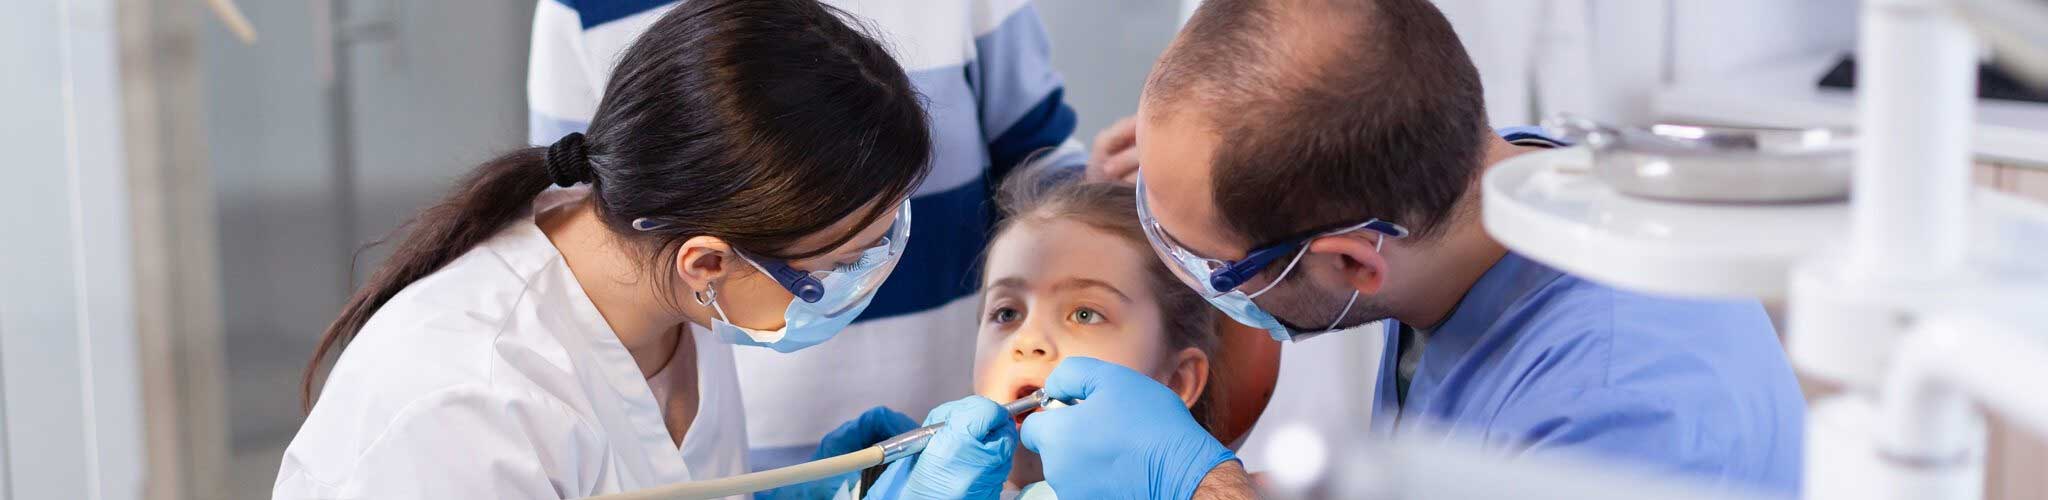 Pediatric Dentistry - DentisTree Dental Clinic